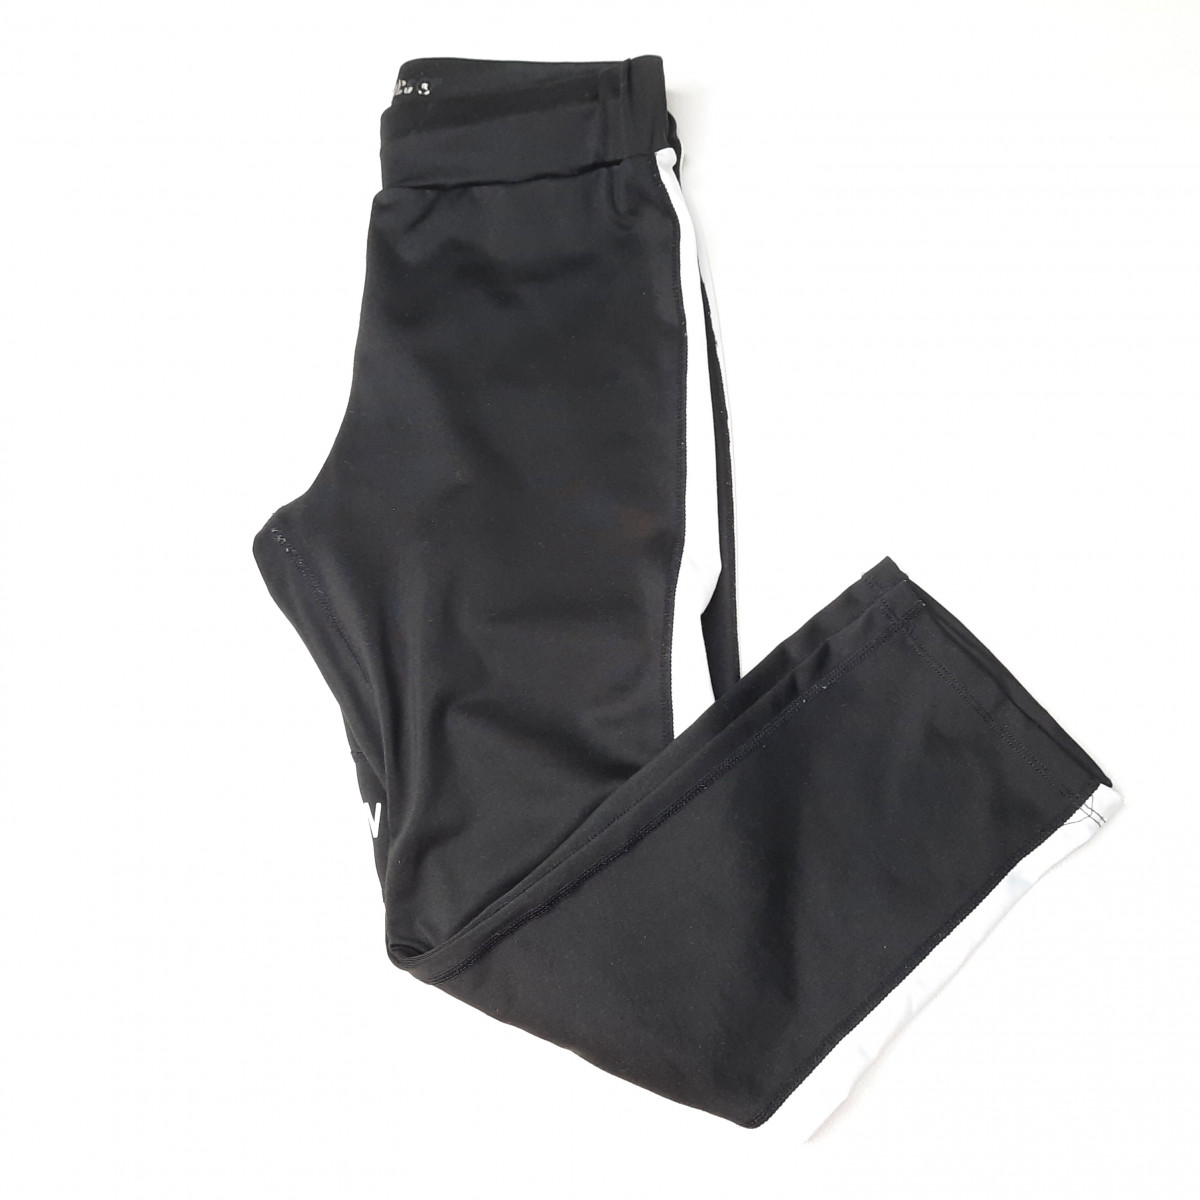 Pantalon sport noir XS - Boutique Toup'tibou - photo 6